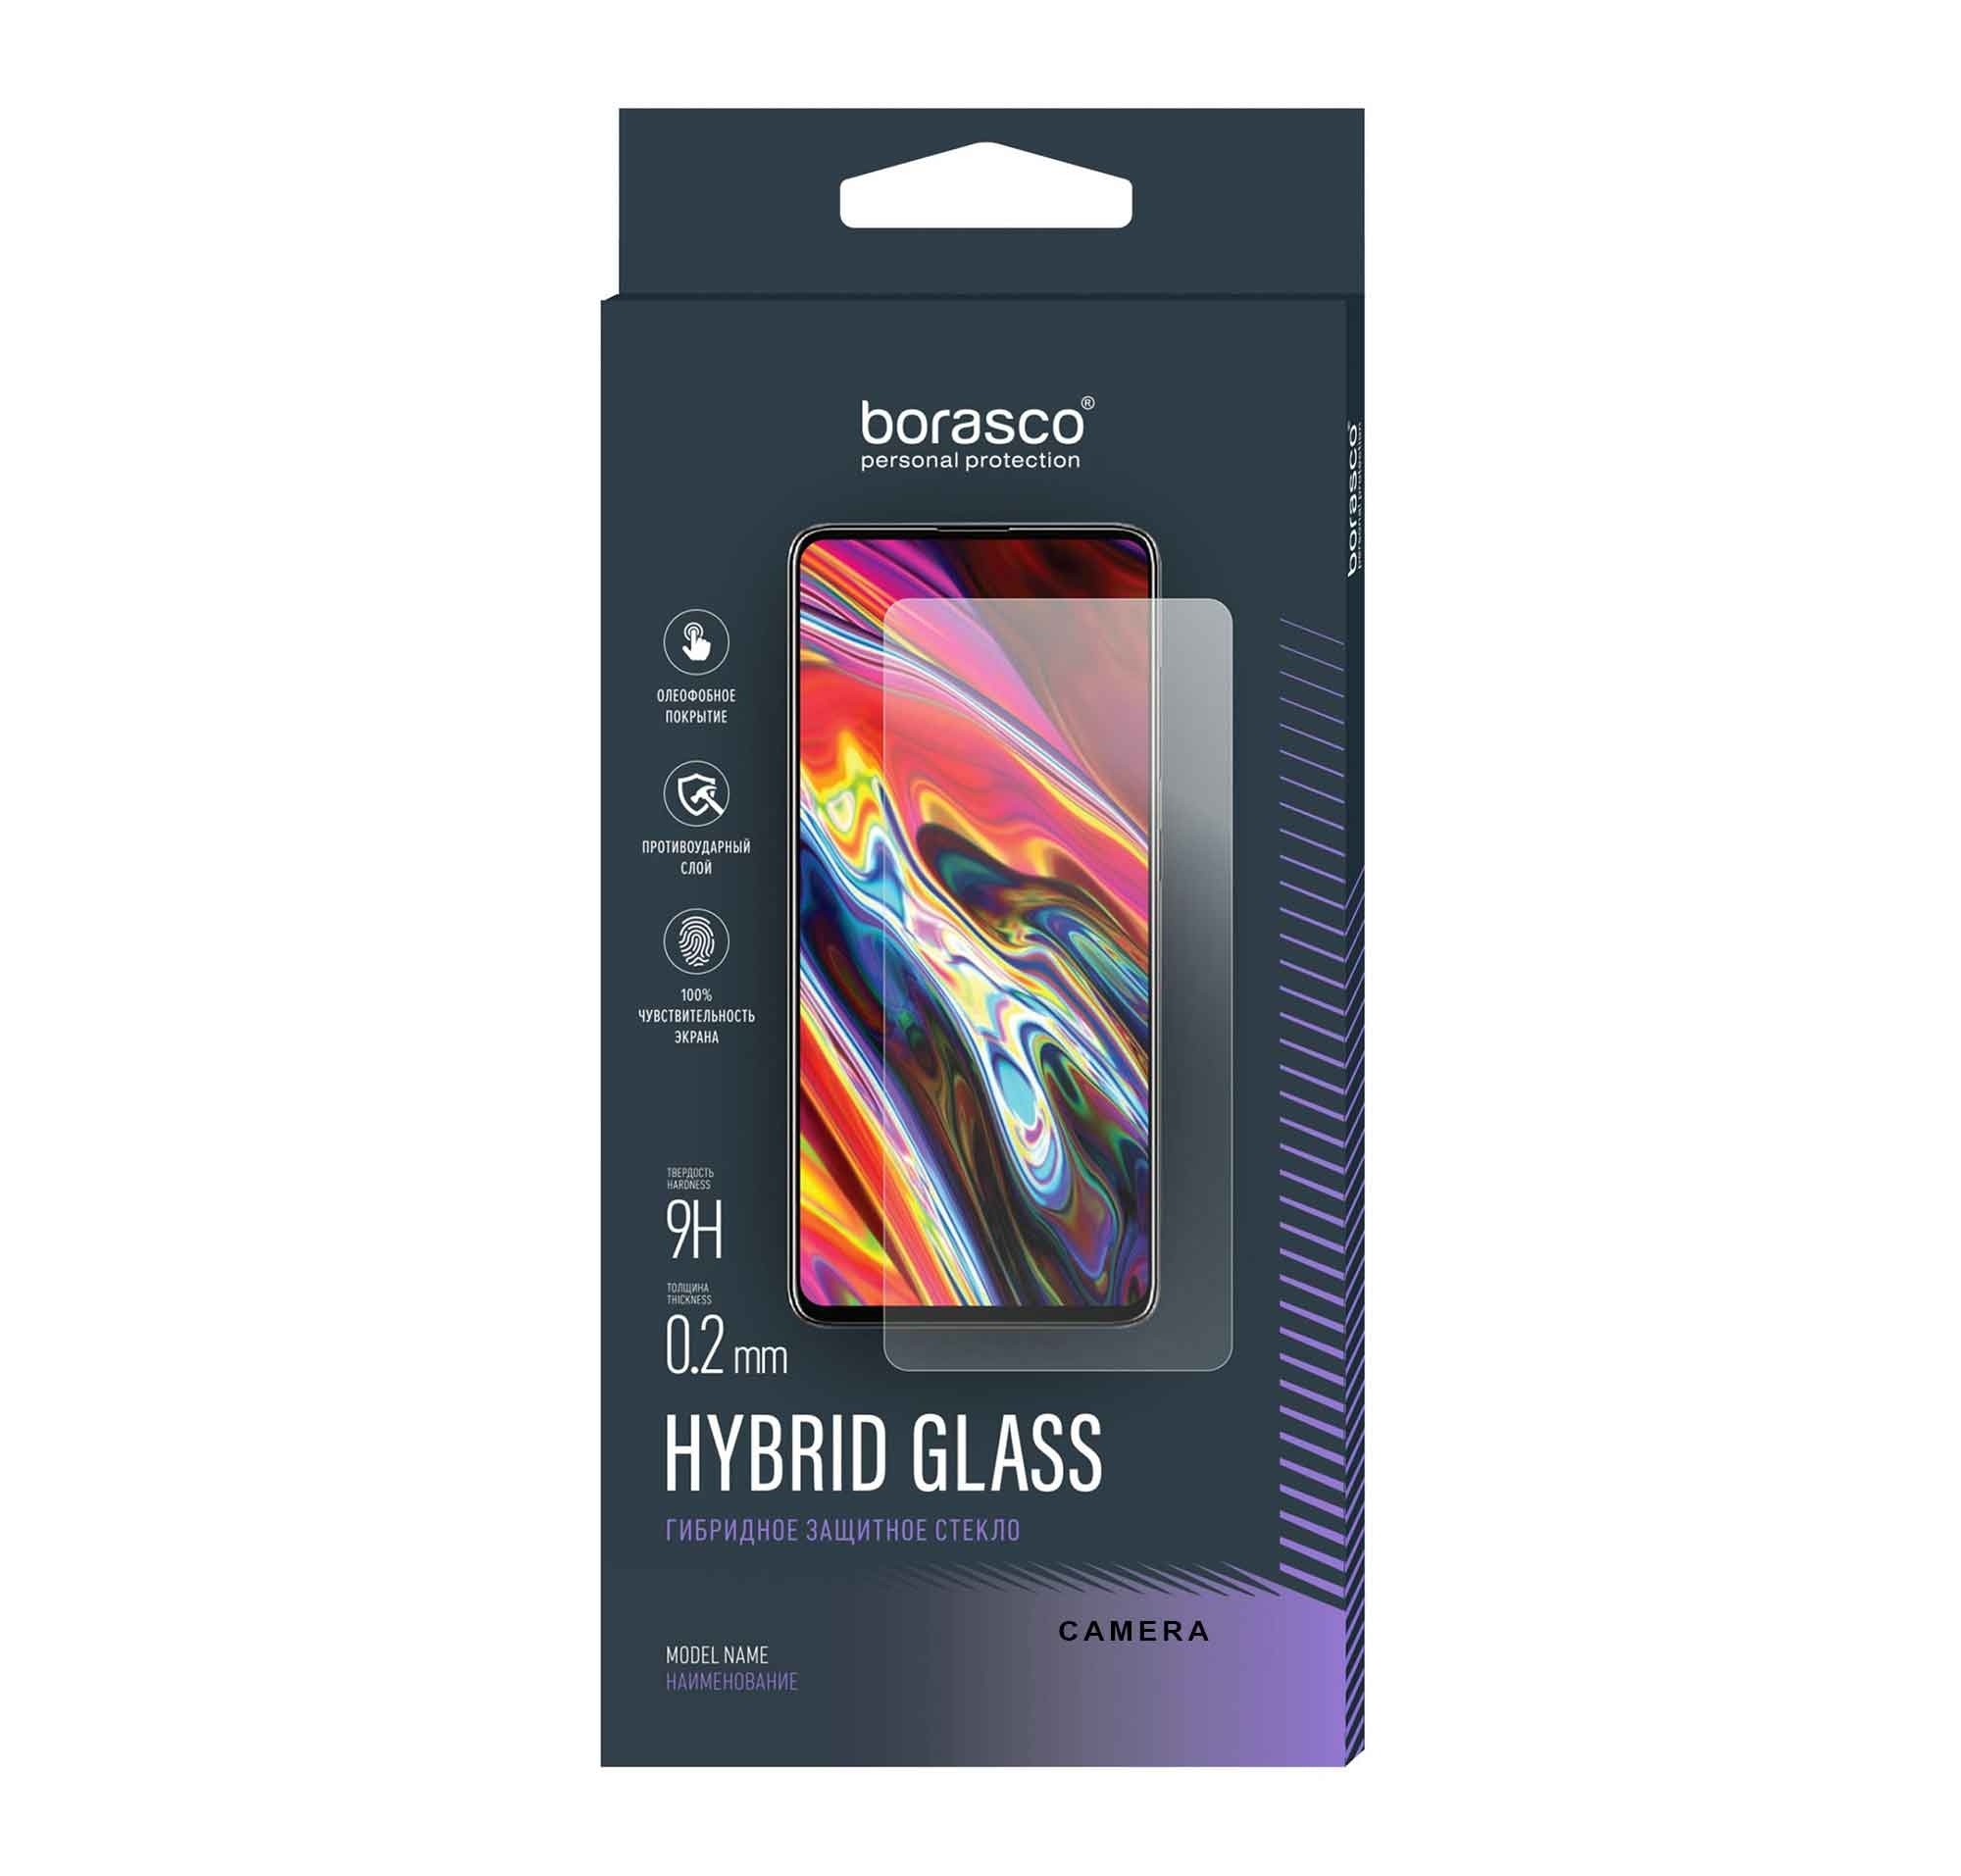 Стекло защитное BoraSCO (Экран+Камера) Hybrid Glass для Oukitel F150 Air 1 Pro / B1 / B1 Pro защитное стекло для oukitel f150 air 1 pro b1 b1 pro оукител ф150 айр 1 про б1 б1 про гибридное гибкое стекло только на камеру 2 шт